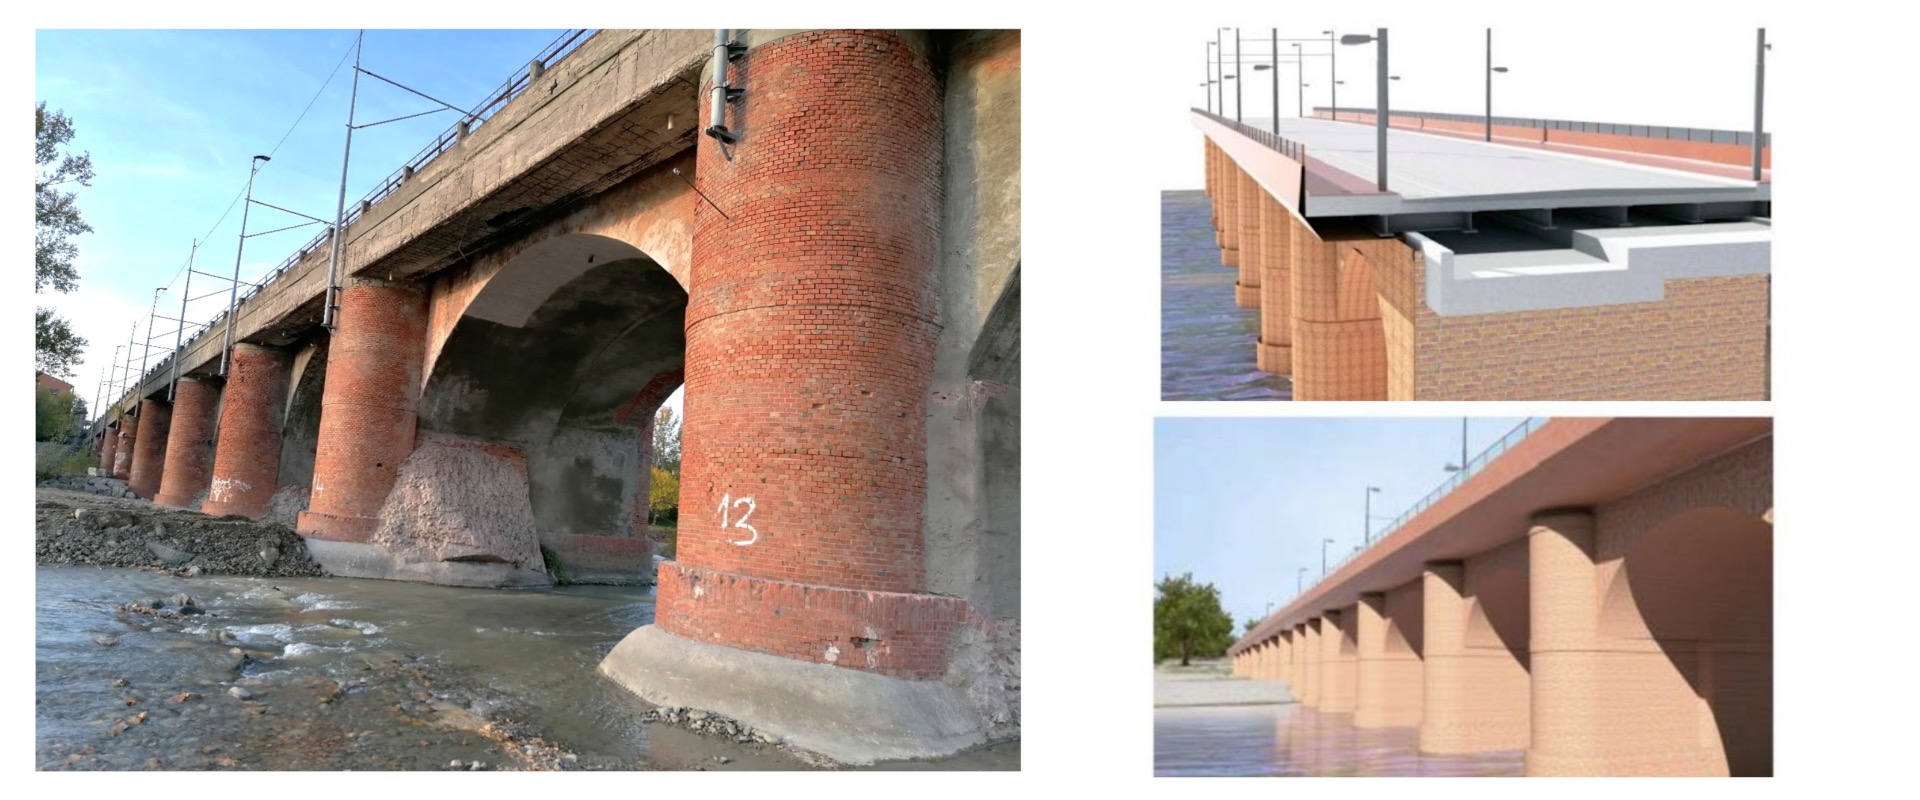 Immagini del ponte e del progetto